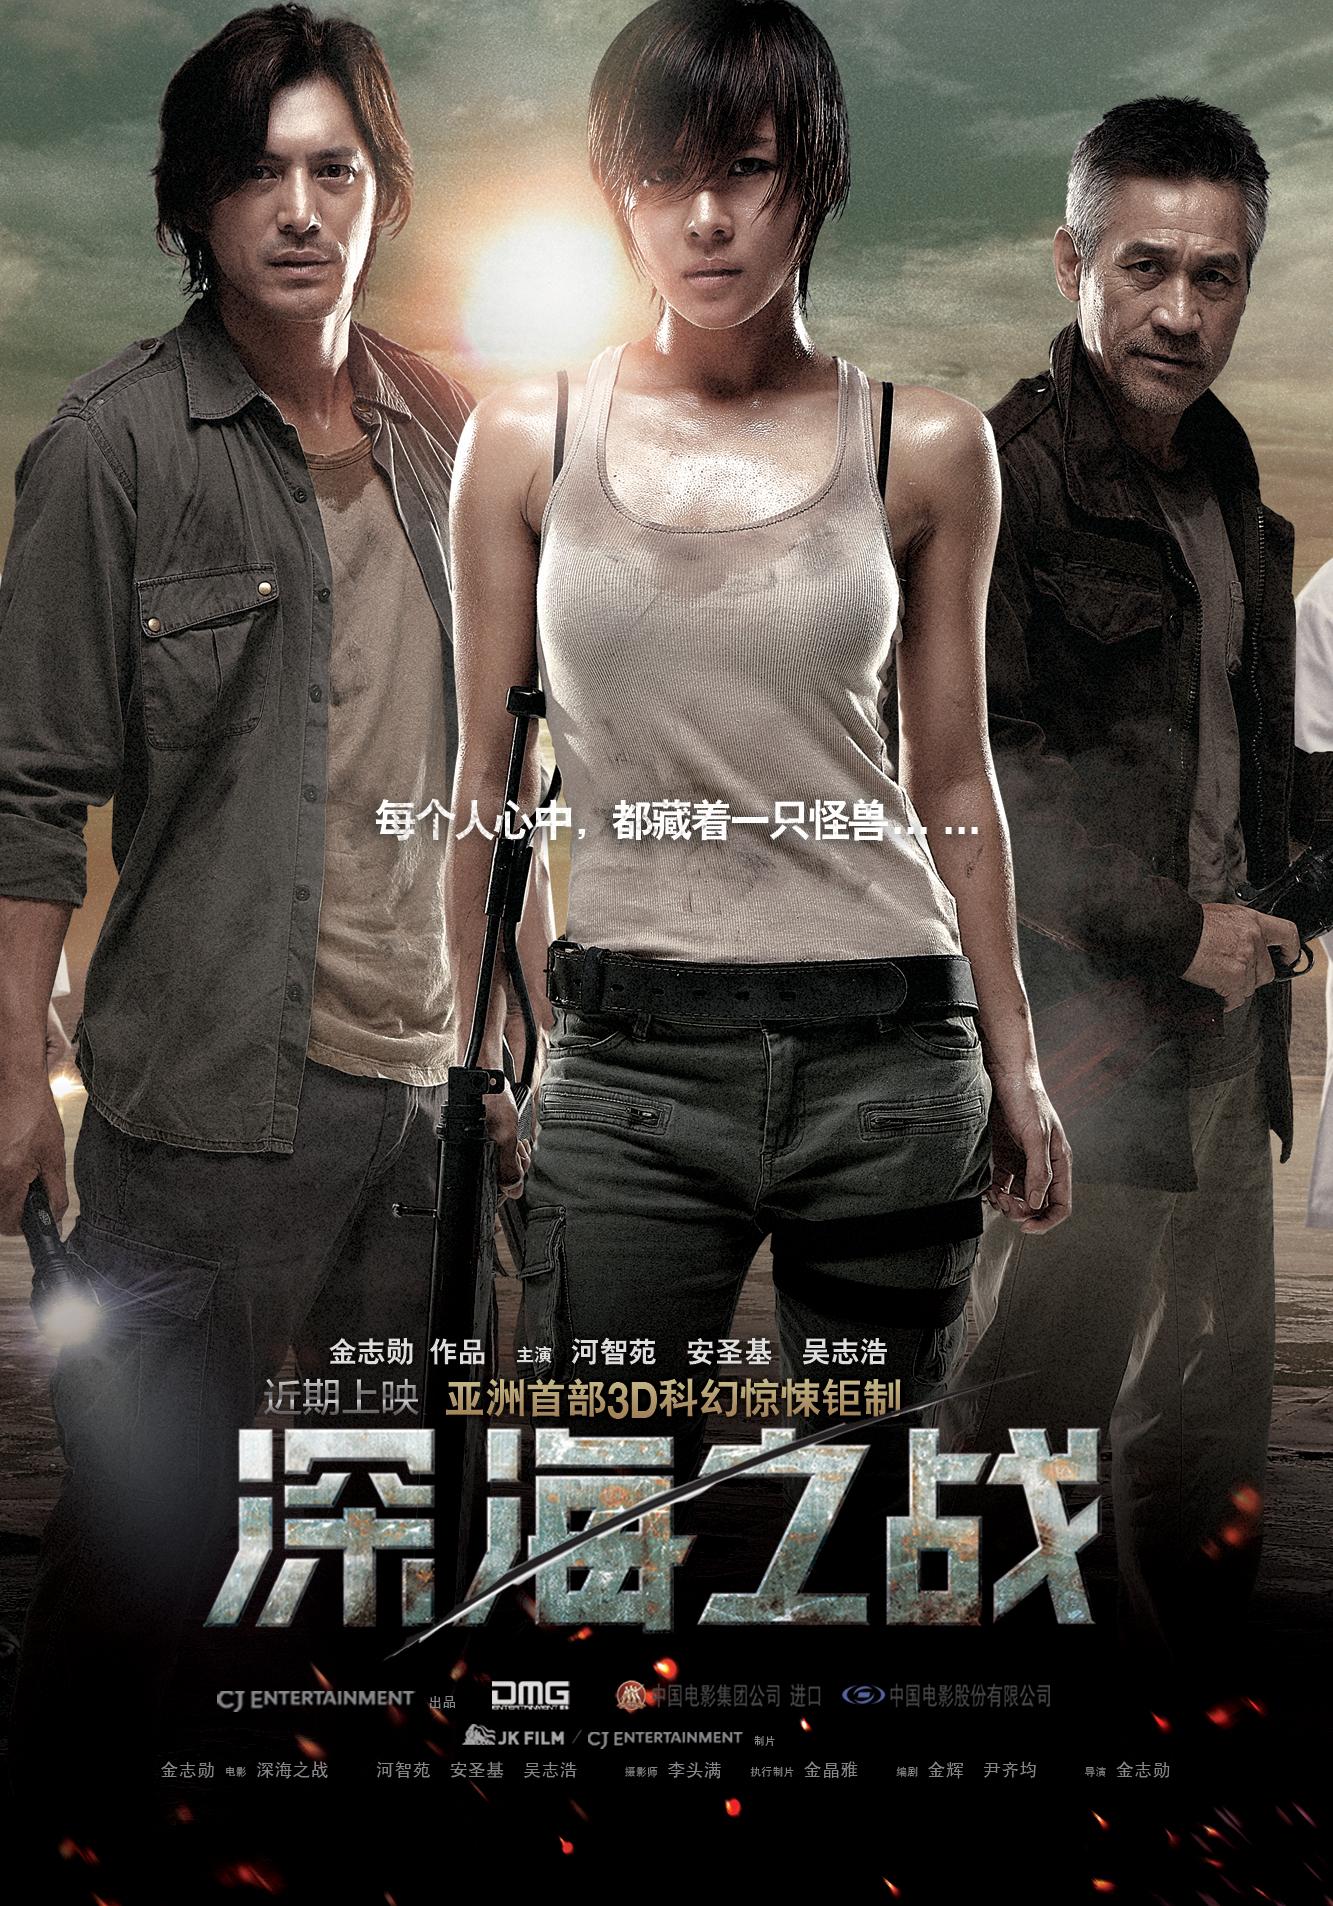 Постер фильма Сектор 7 | 7 gwanggu